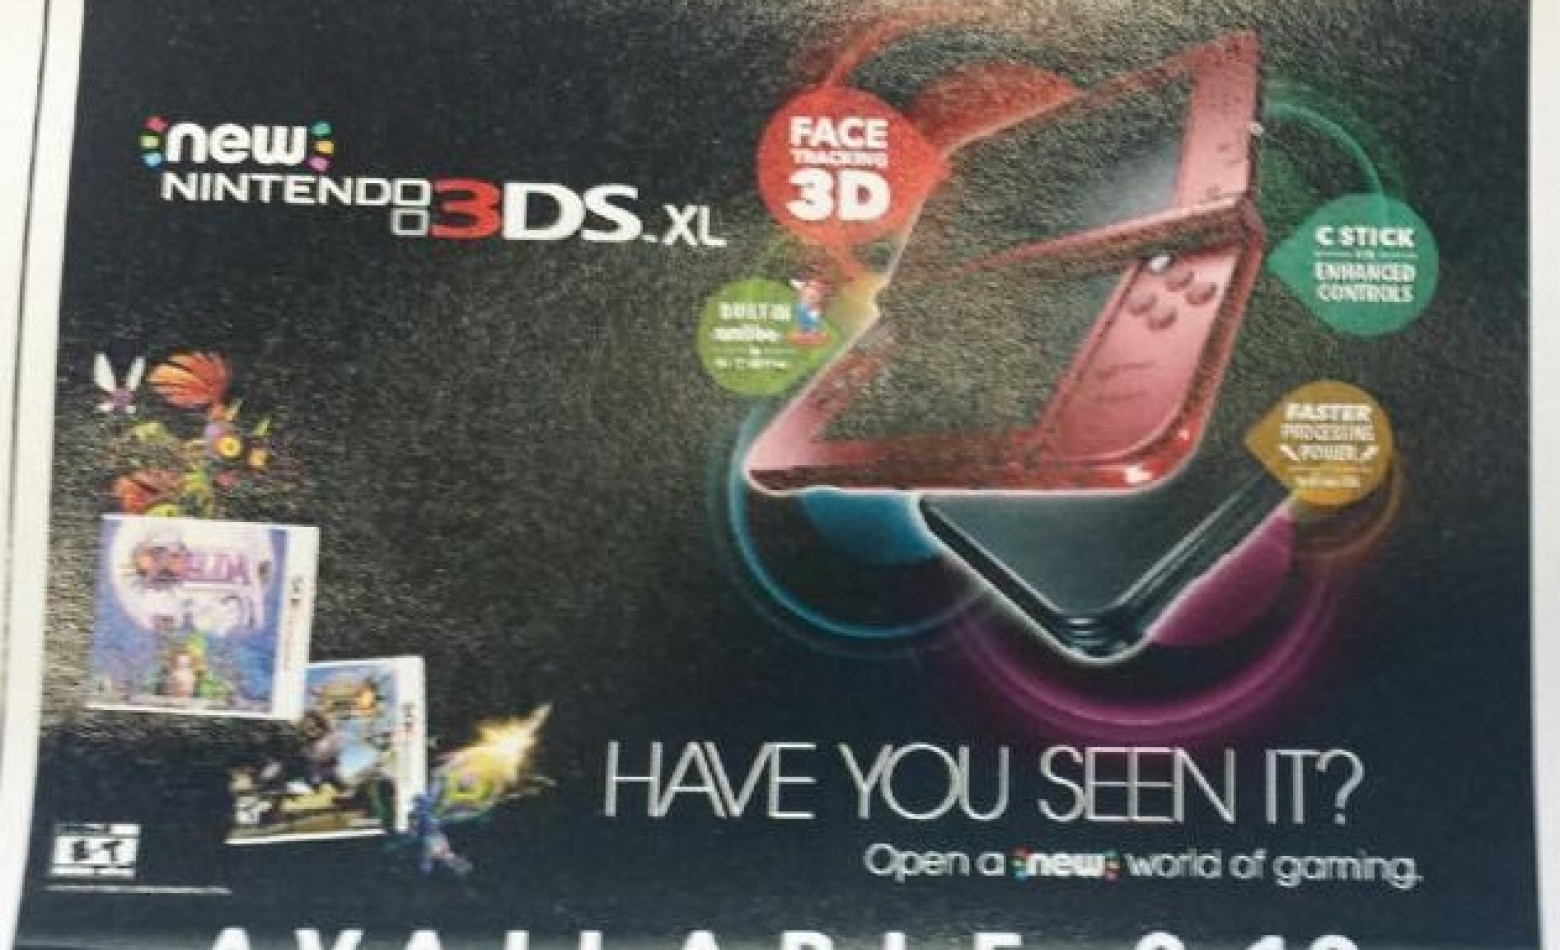 New Nintendo 3DS vai chegar às lojas no dia 13 de fevereiro, diz site